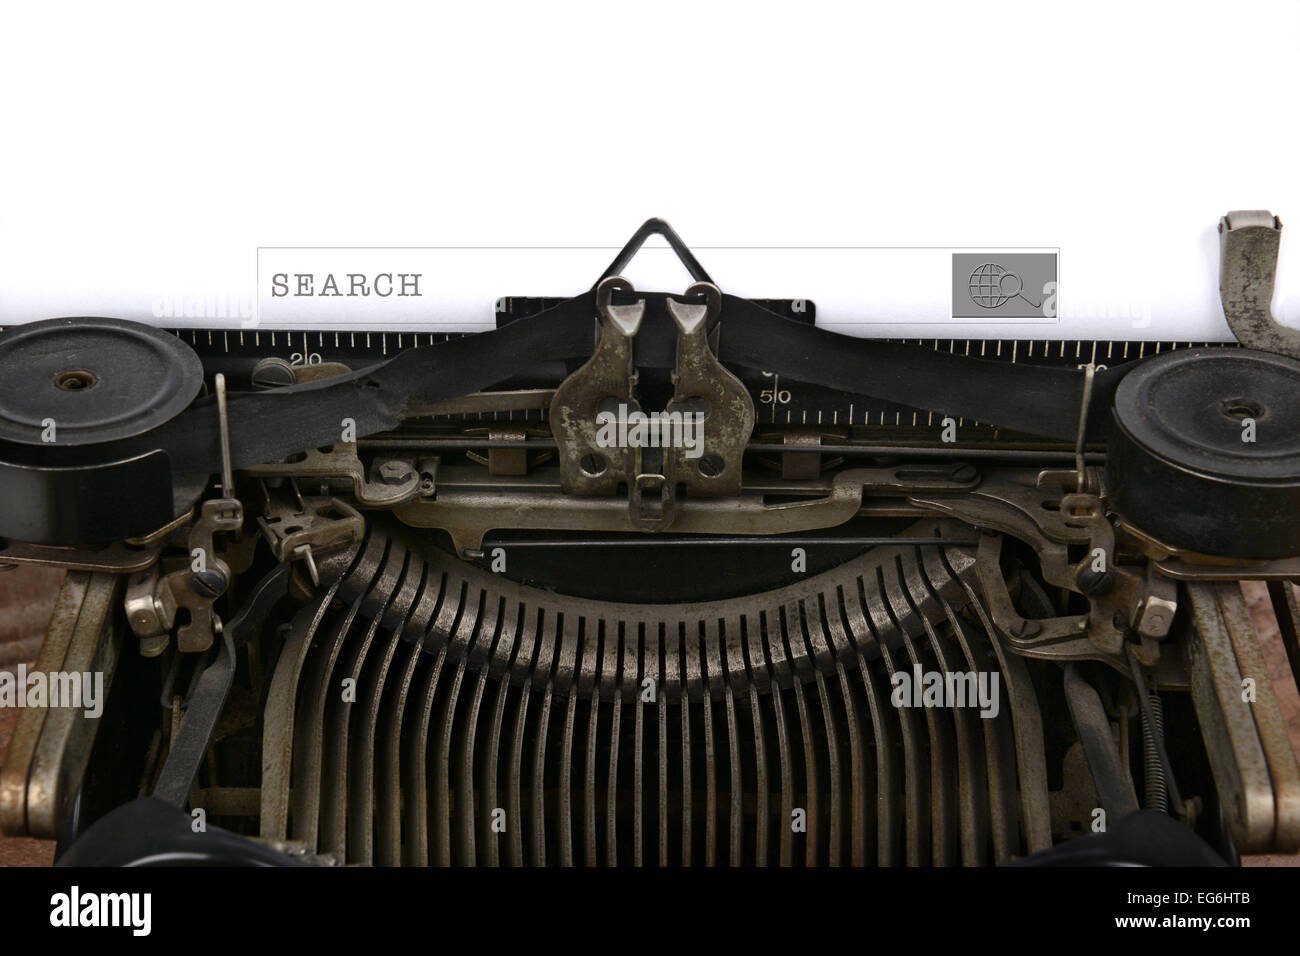 Una vecchia macchina da scrivere con una casella di ricerca. Primo piano delle antiche macchine e il nastro di trasporto con una tecnologia moderna sear Foto Stock